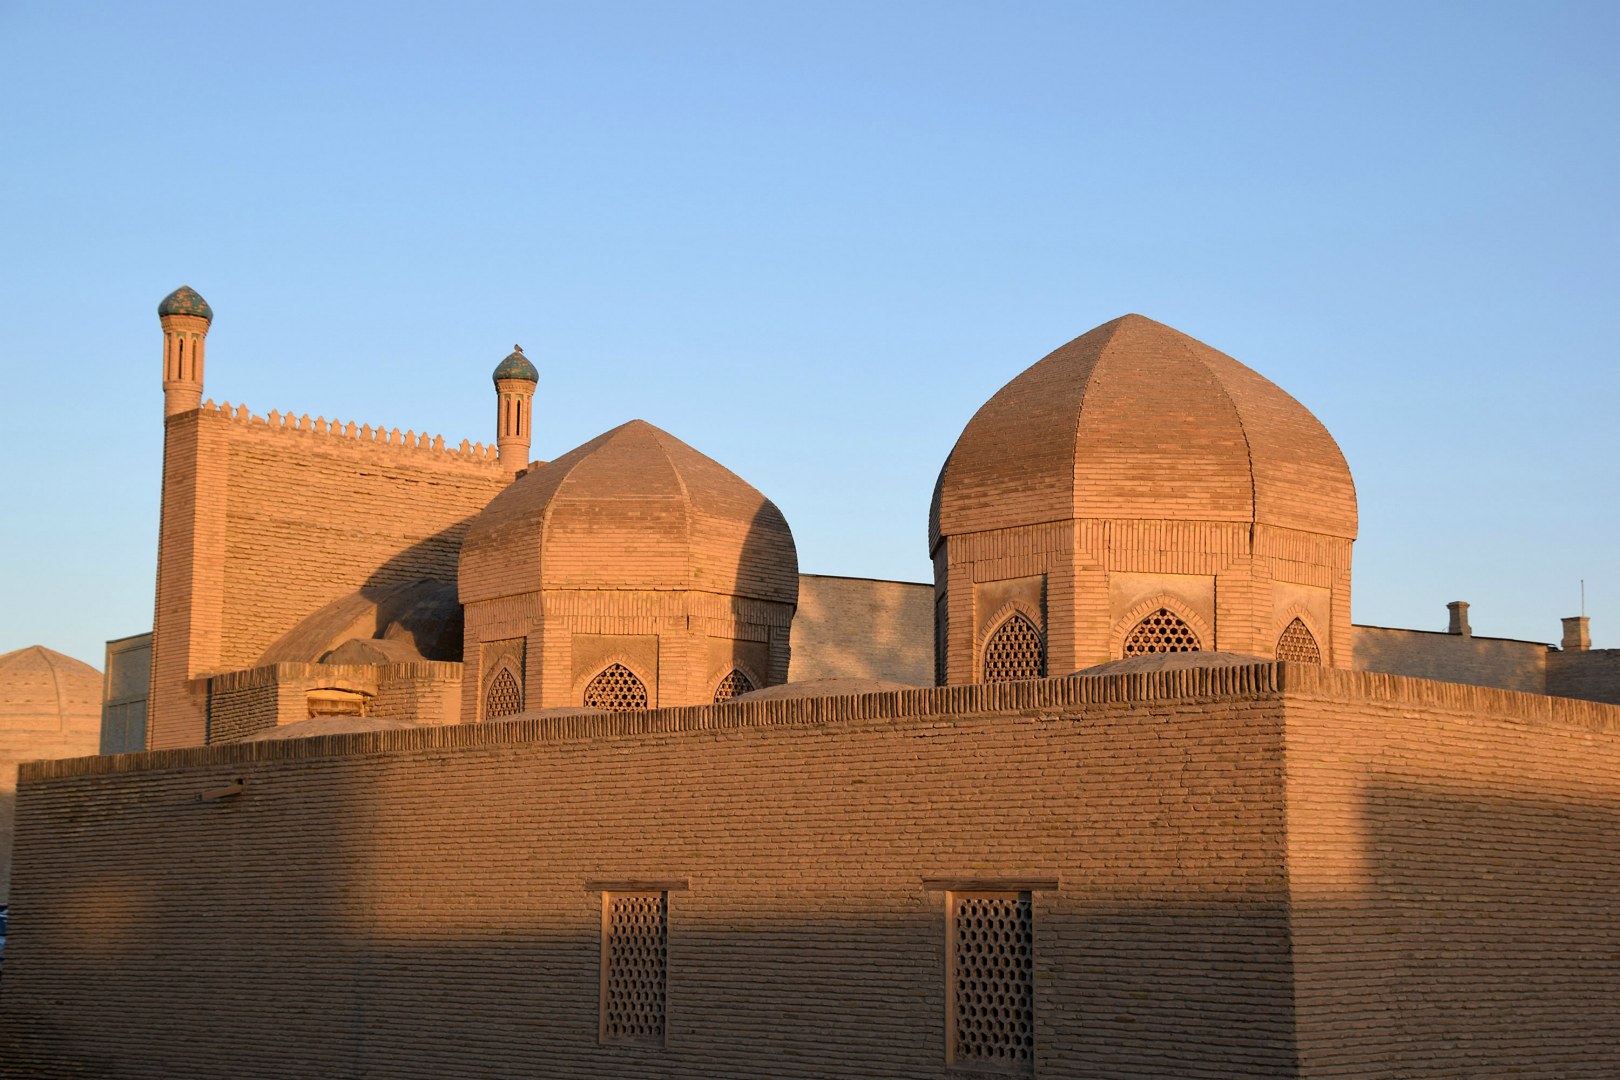 Magoki Attori Mosque, Bukhara